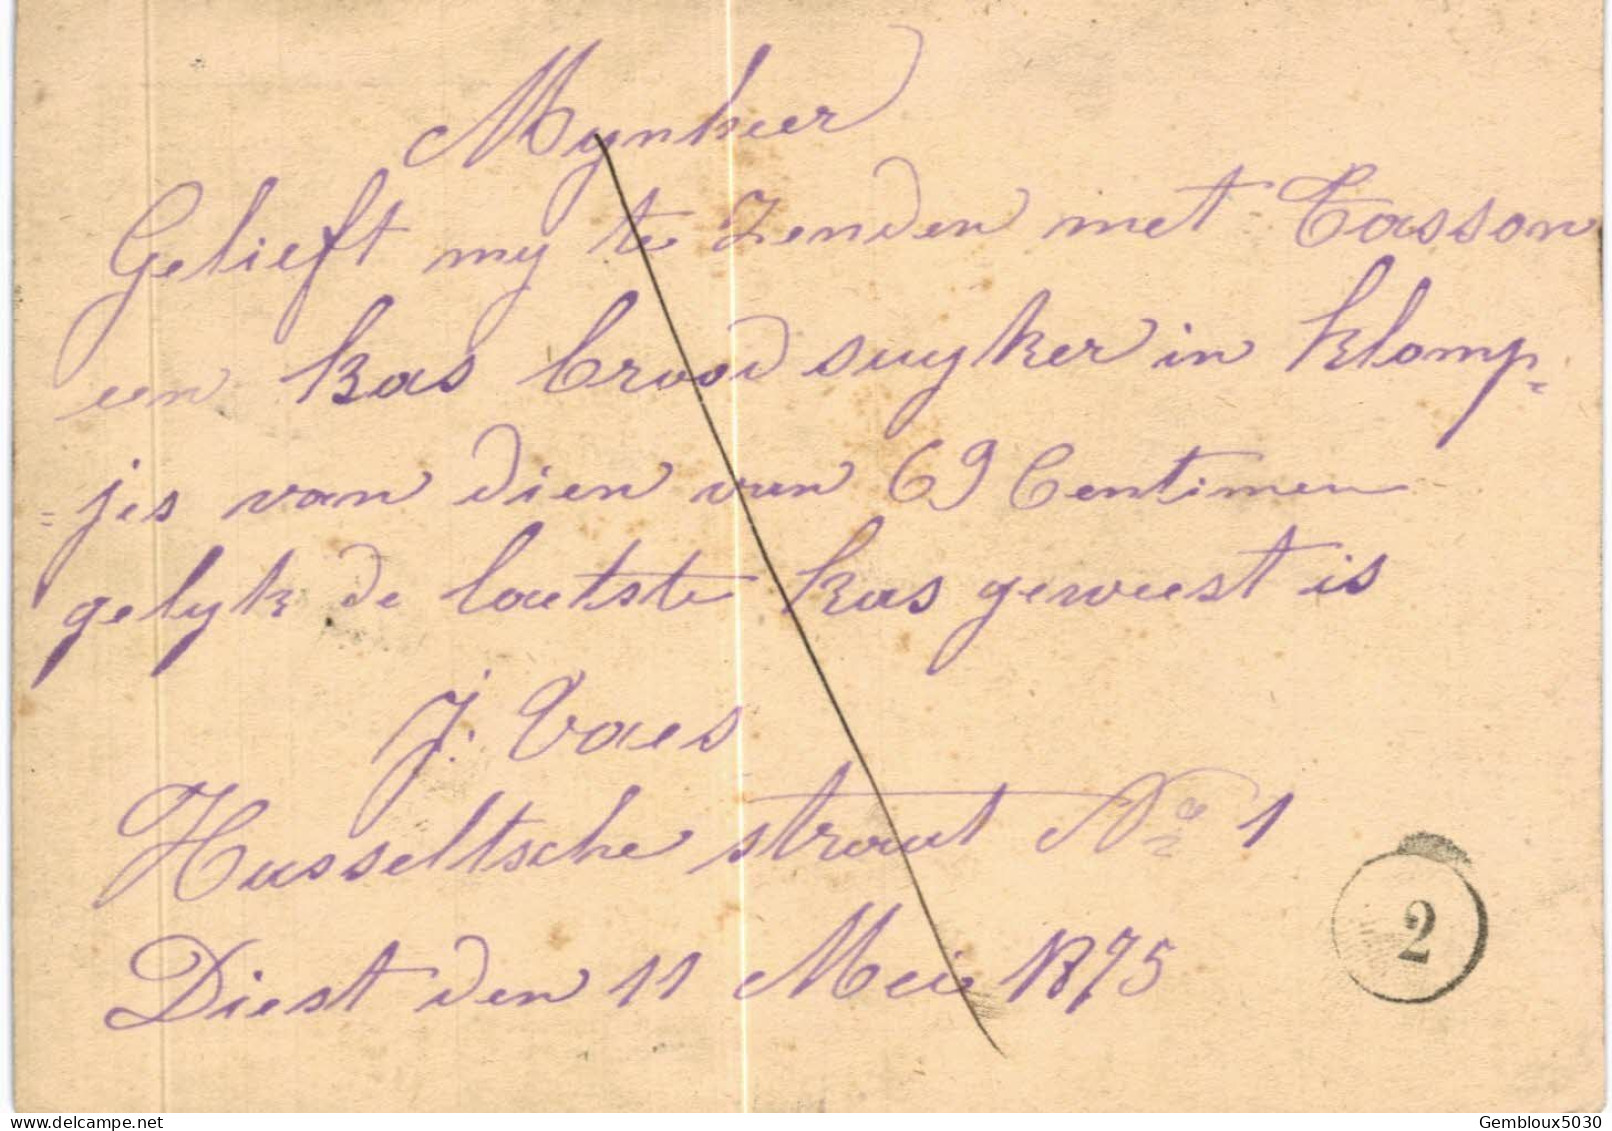 Carte-correspondance N° 28 écrite De Diest Vers Anvers - Letter-Cards